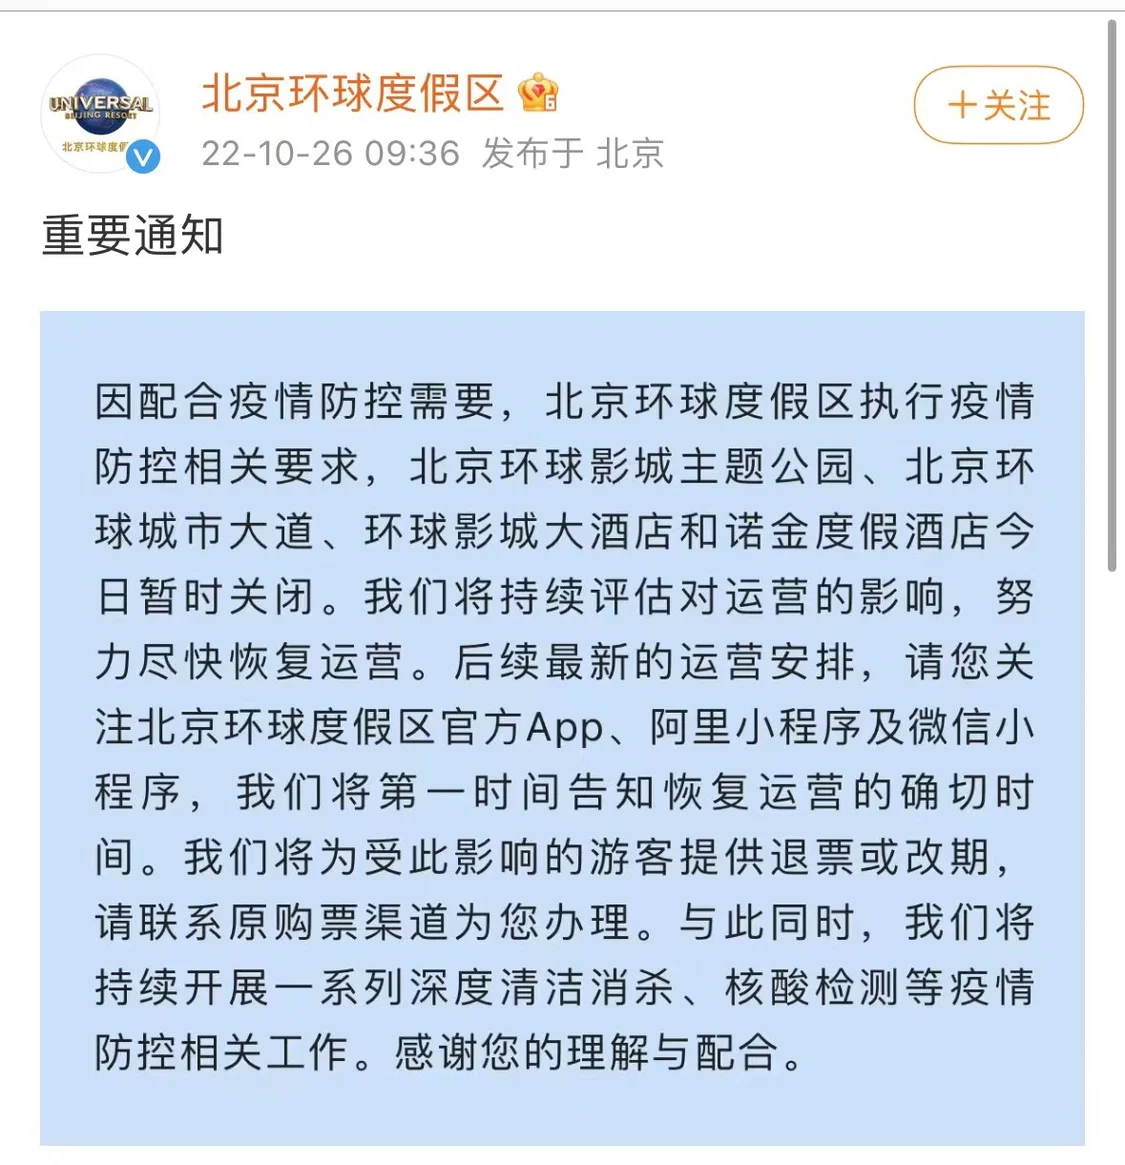 因配合疫情防控需要，北京环球影城26日暂时关闭